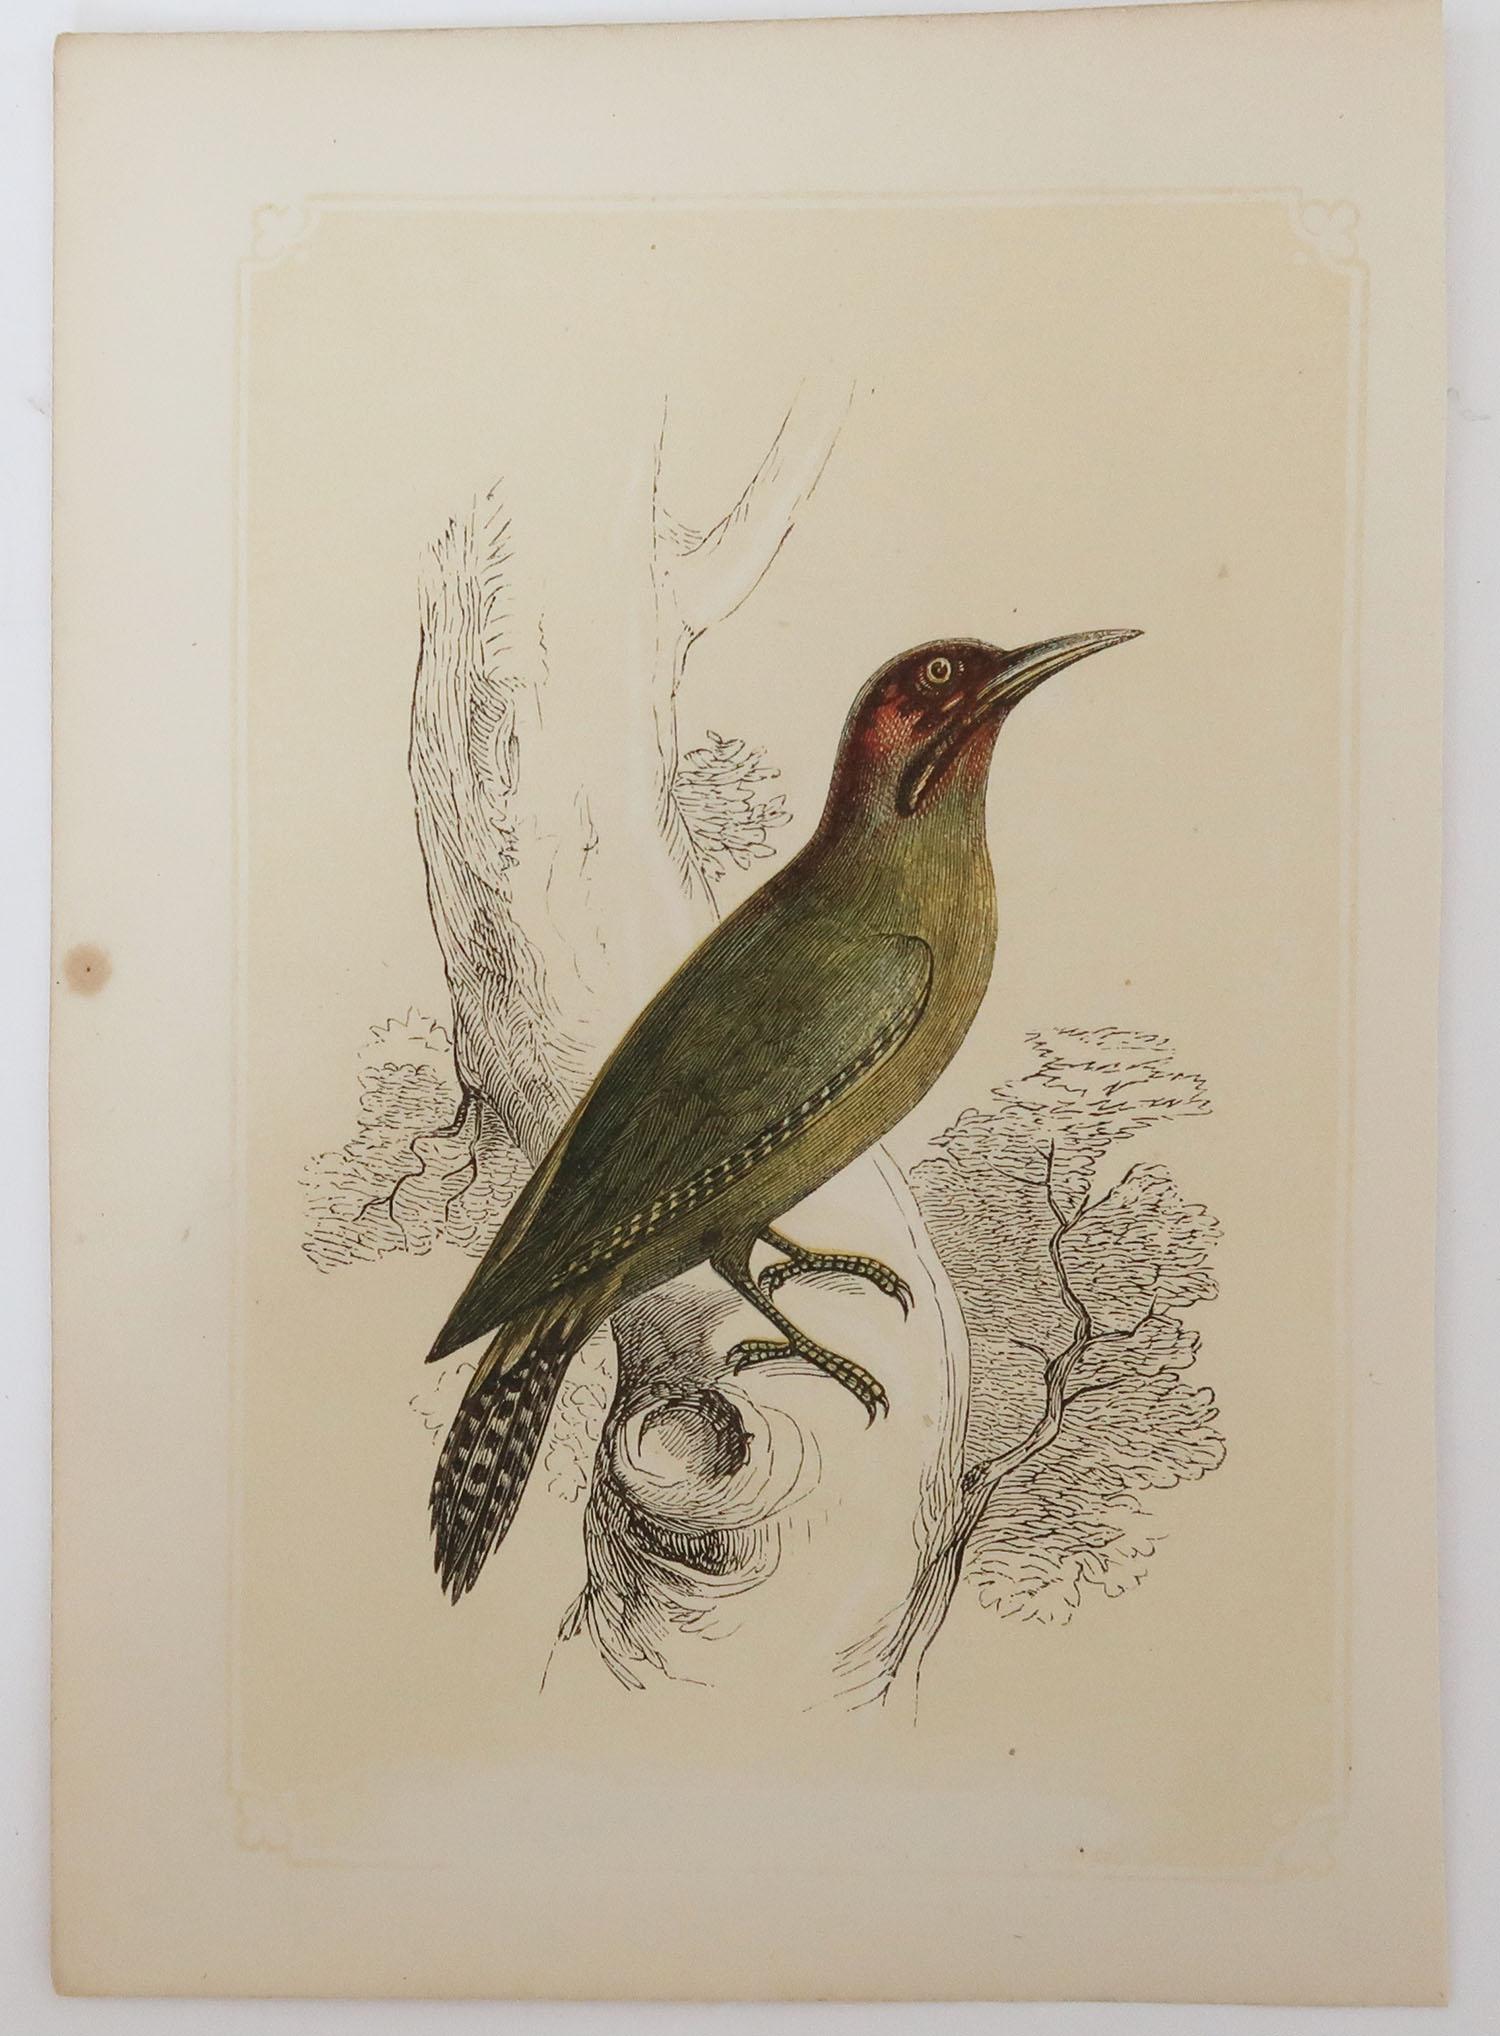 Folk Art Original Antique Bird Print, the Green Woodpecker, Tallis, circa 1850